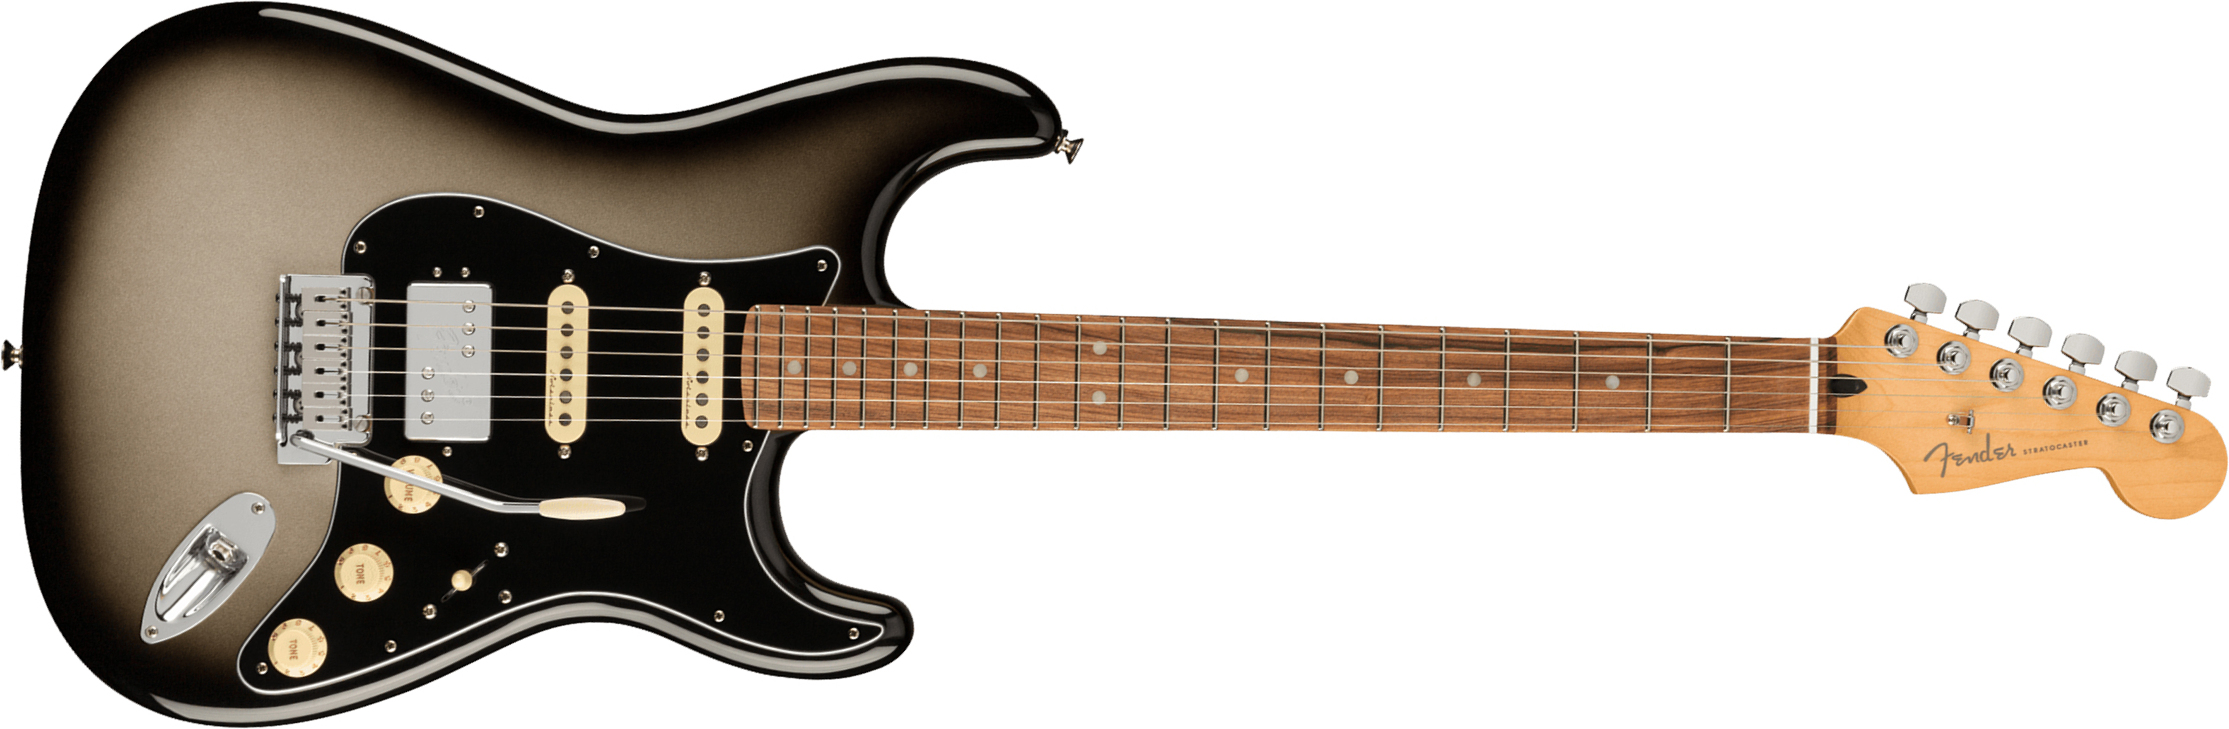 Fender Strat Player Plus Mex Hss Trem Pf - Silverburst - Guitarra eléctrica con forma de str. - Main picture